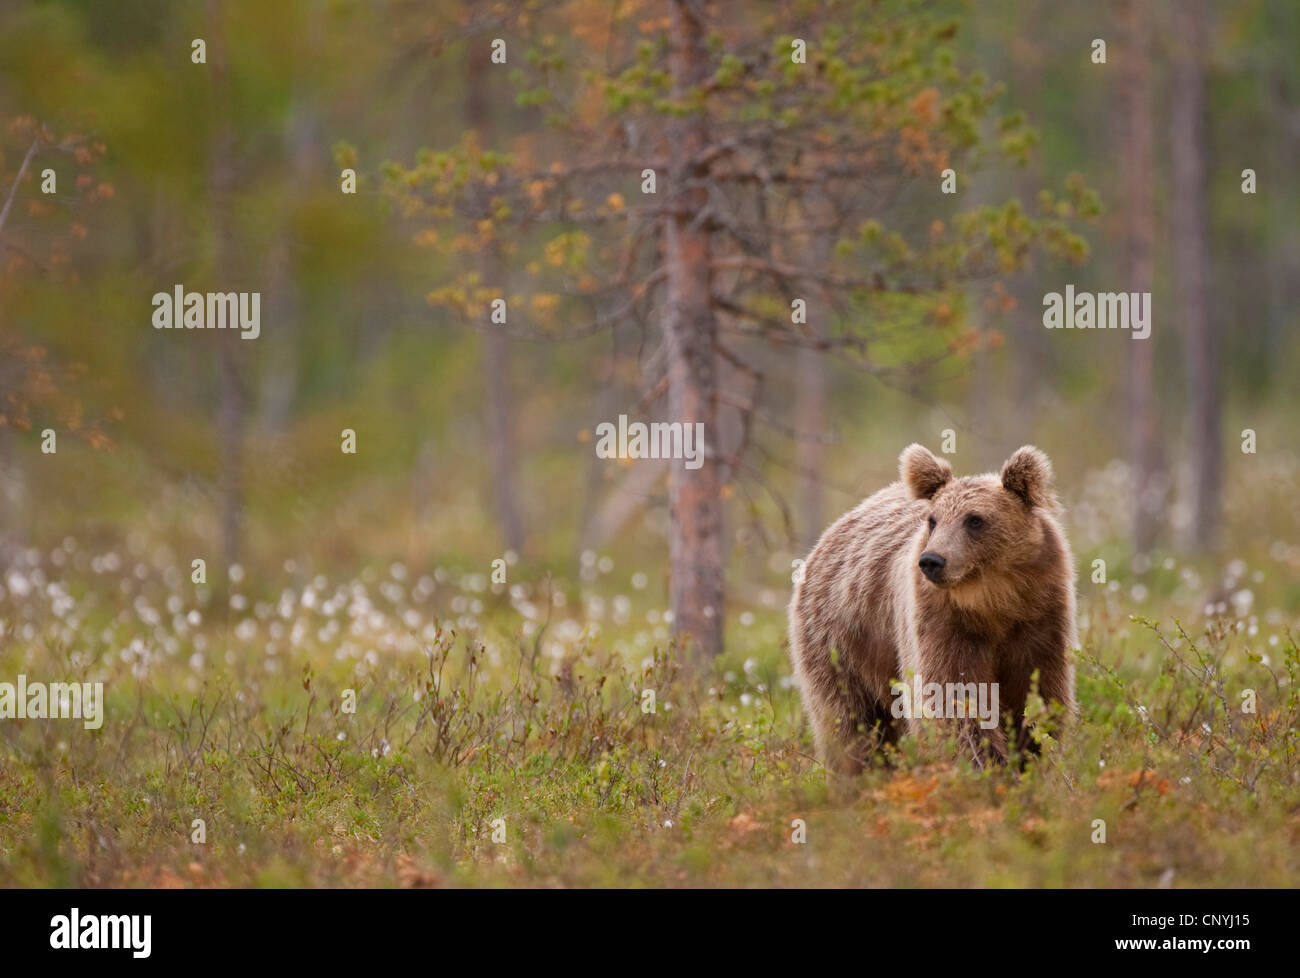 Unione l'orso bruno (Ursus arctos arctos), i capretti in piedi in erba di cotone in un luminoso bosco di conifere, Finlandia, Suomassalmi Foto Stock